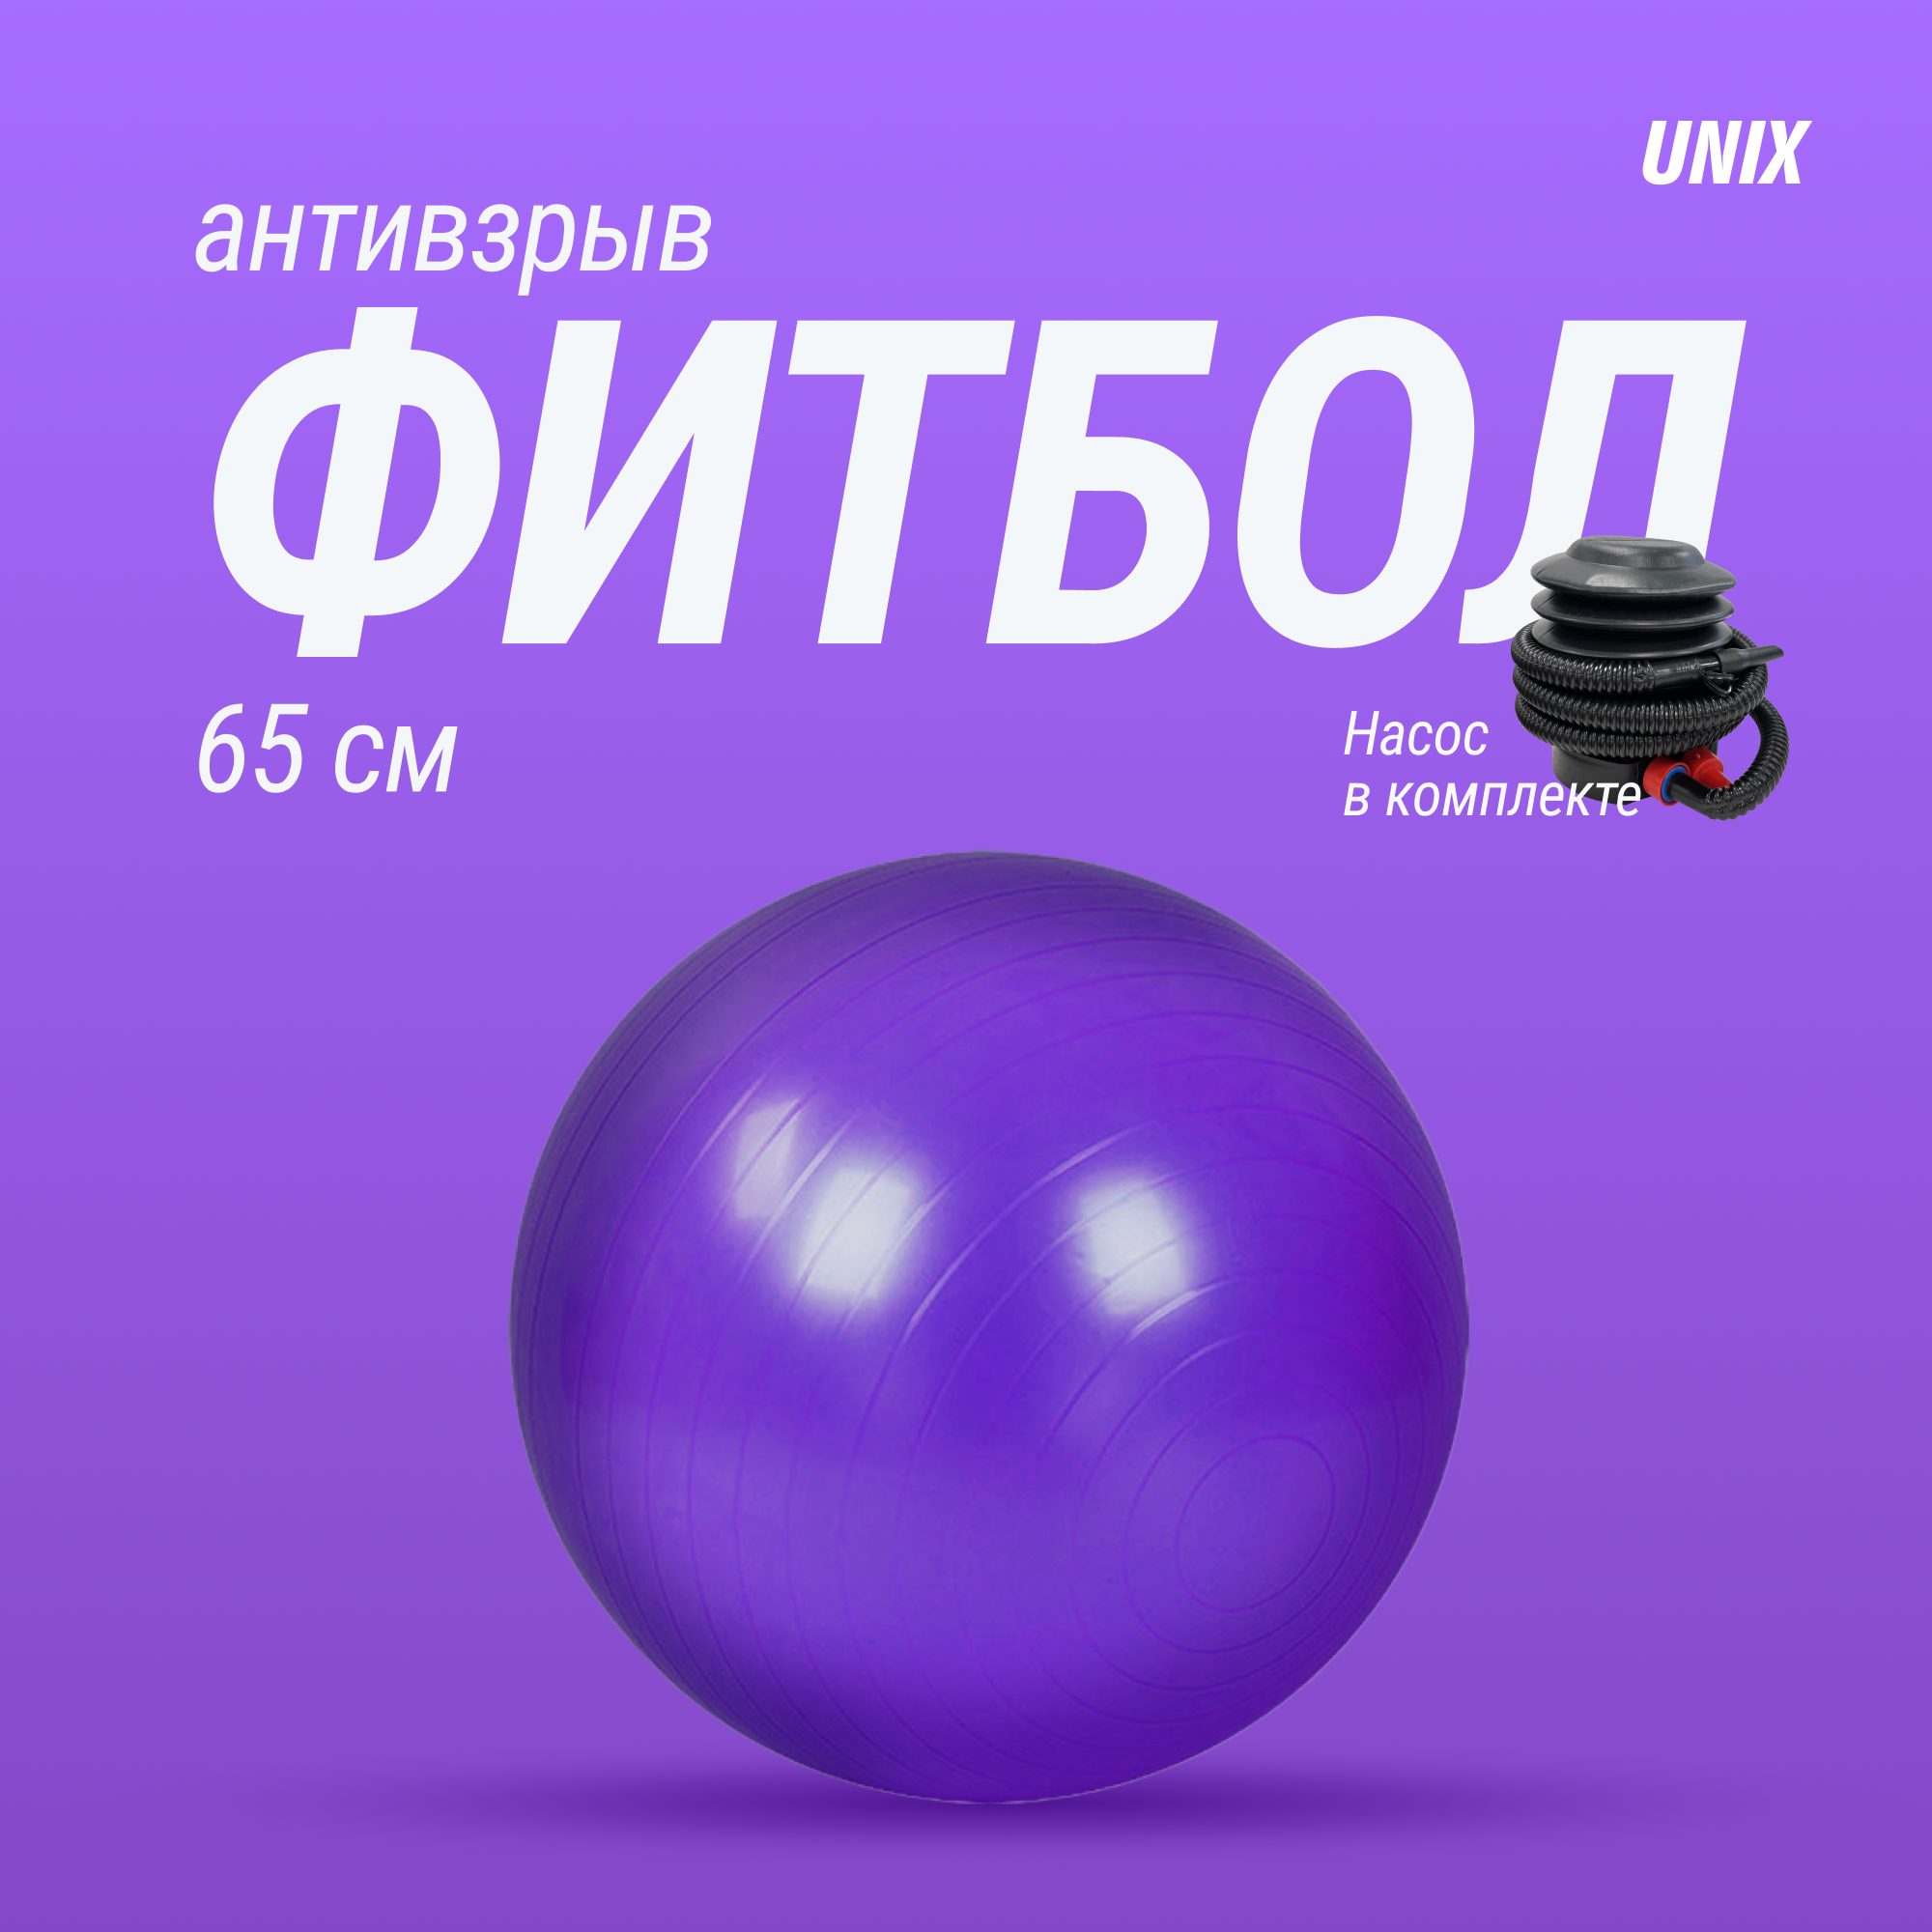 Фитбол с насосом для детей и взрослых UNIX Fit, мяч гимнастический для беременных, антивзрыв 65 см, фиолетовый UNIXFIT